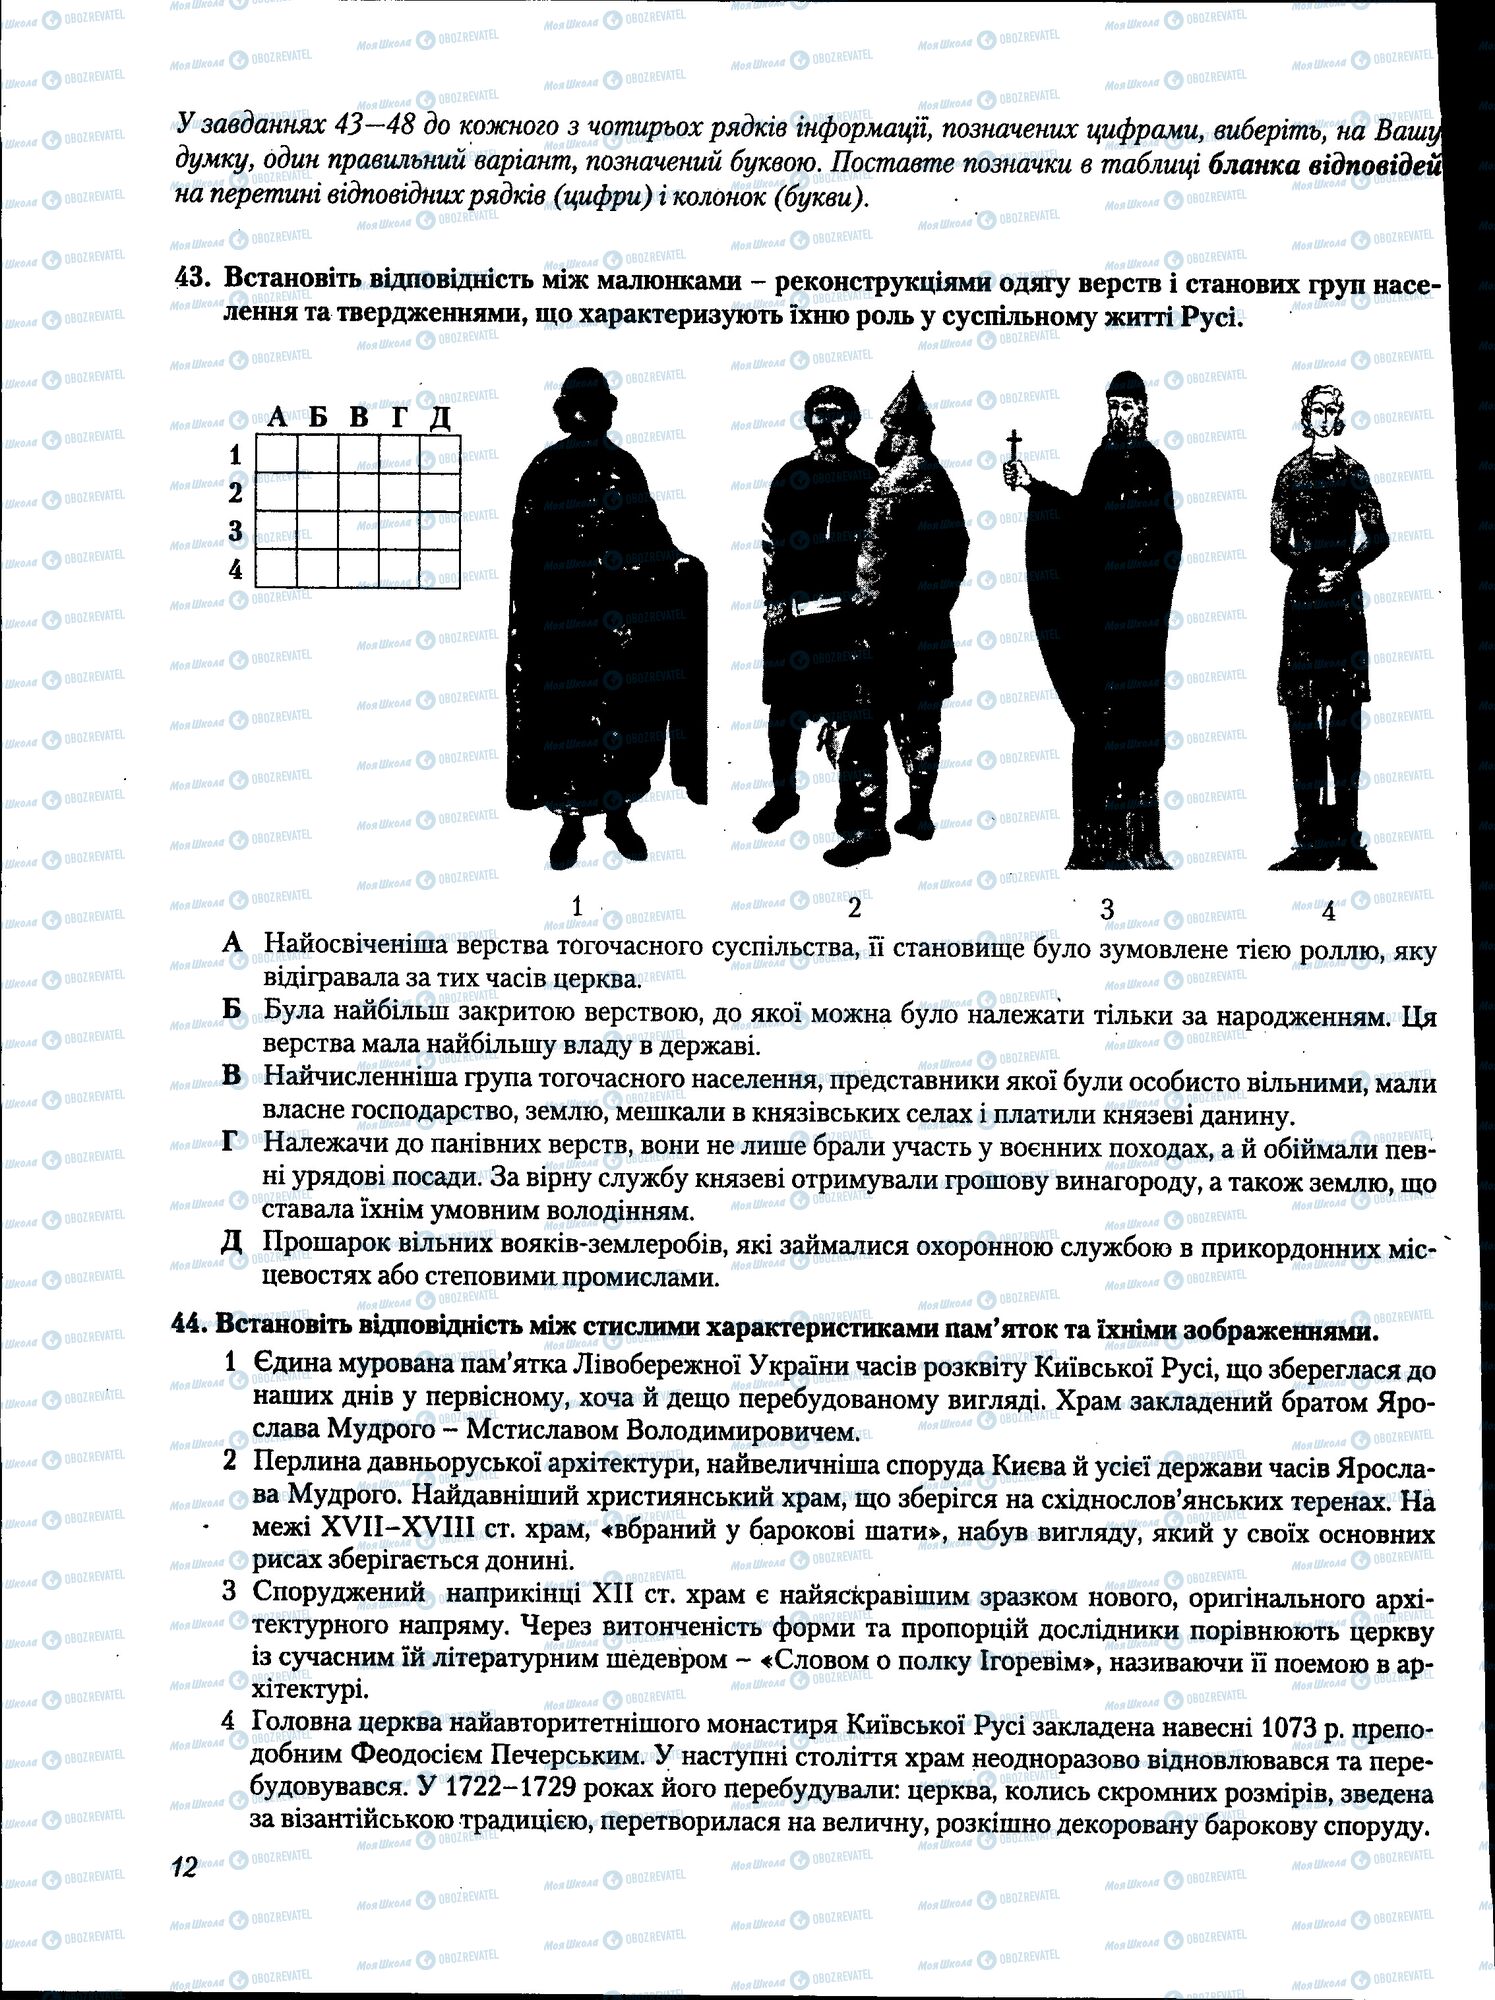 ЗНО История Украины 11 класс страница 012